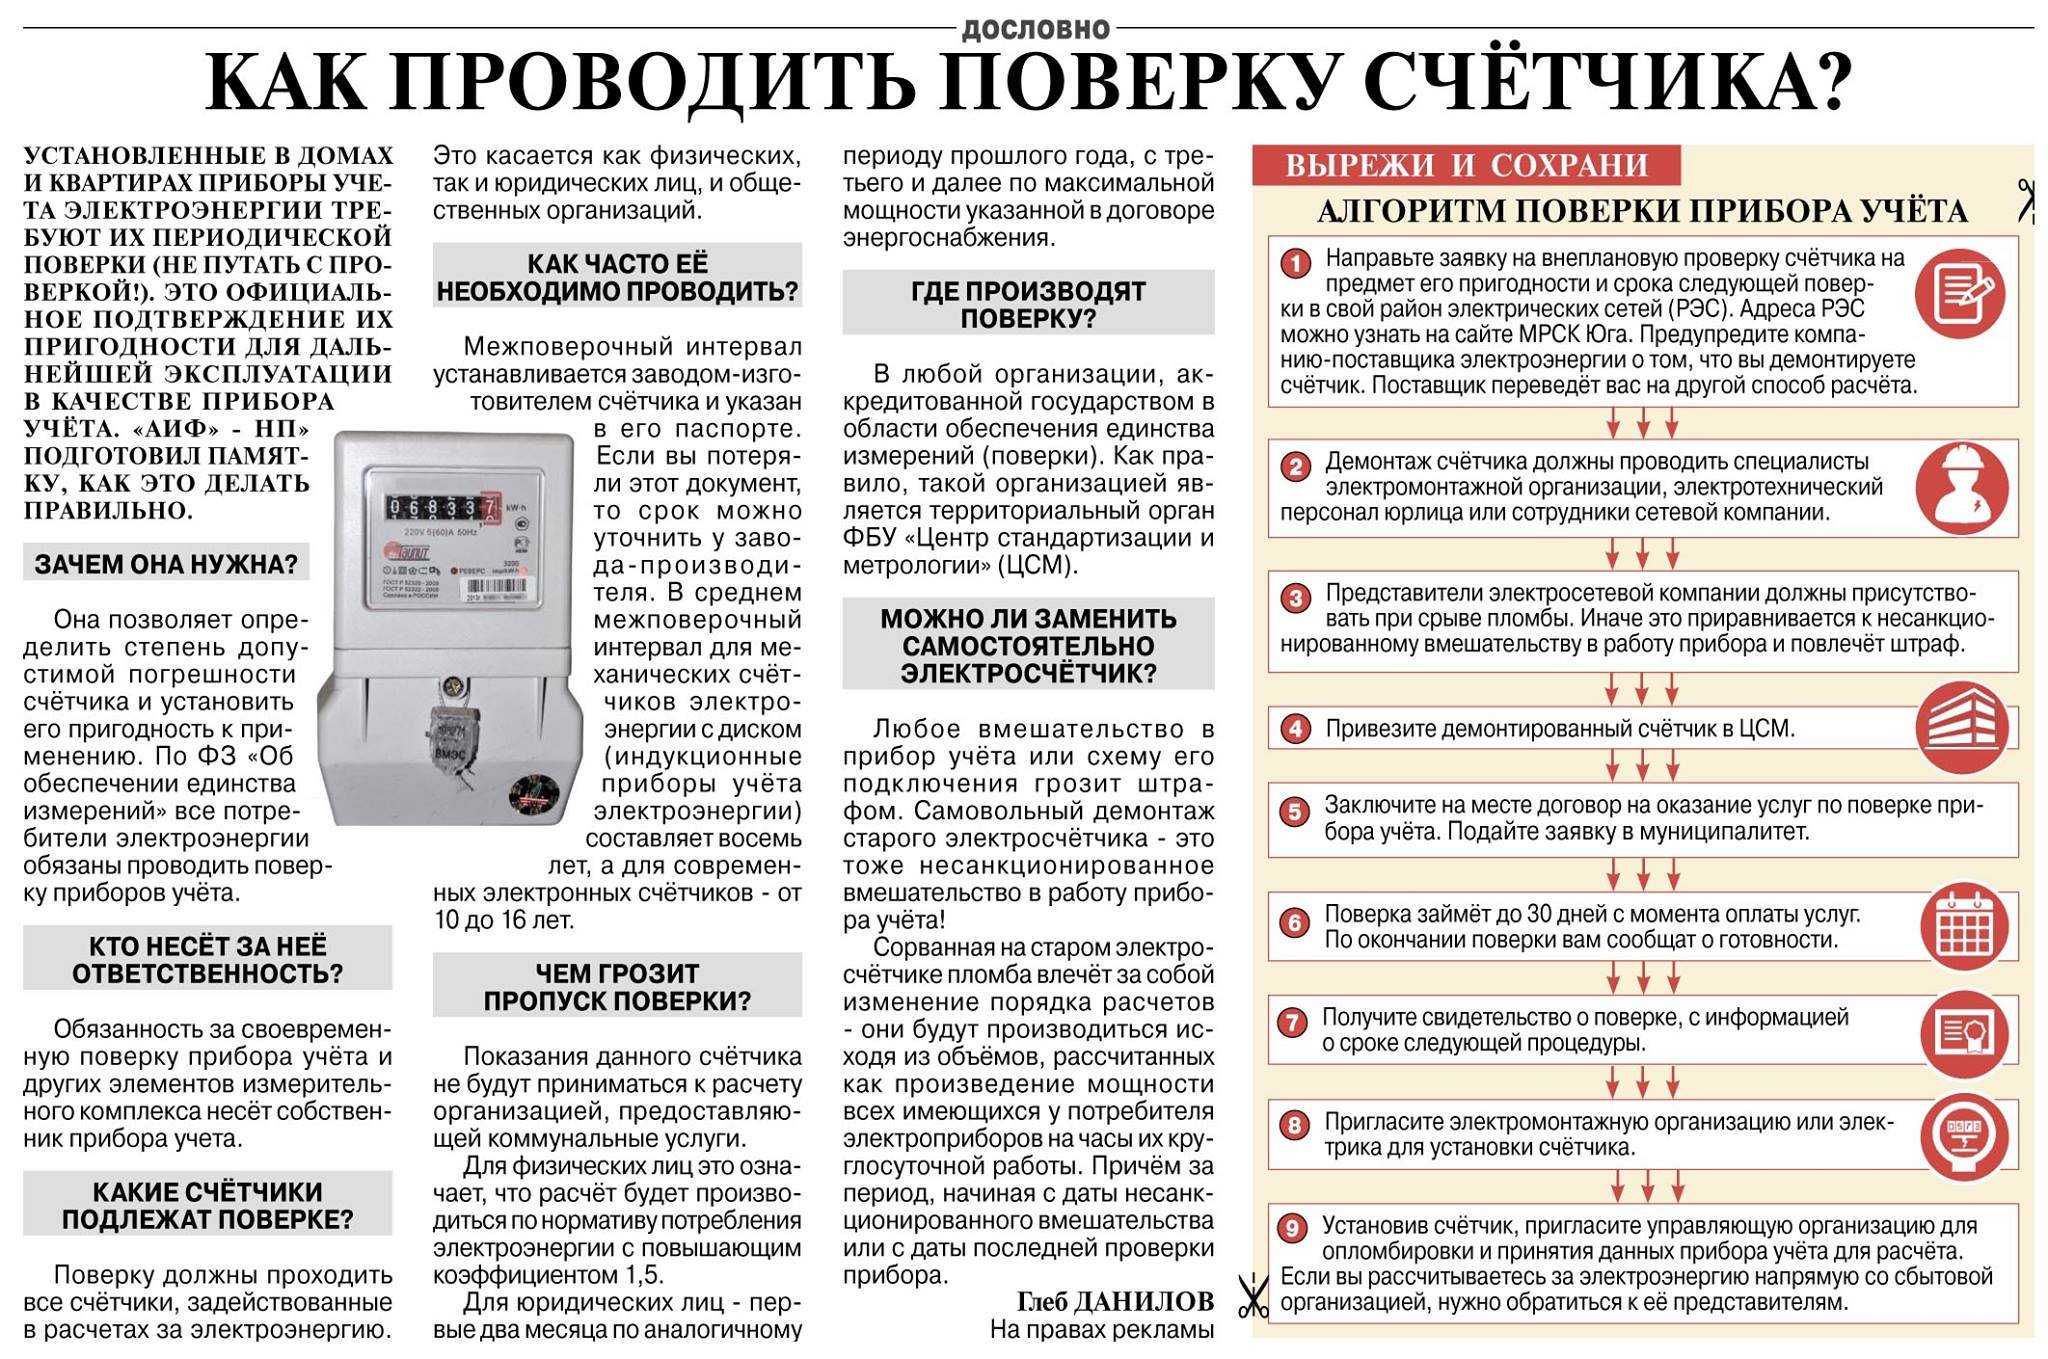 Классы точности электросчетчиков. требования к электросчетчику по точности. приборы учета электроэнергии :: syl.ru